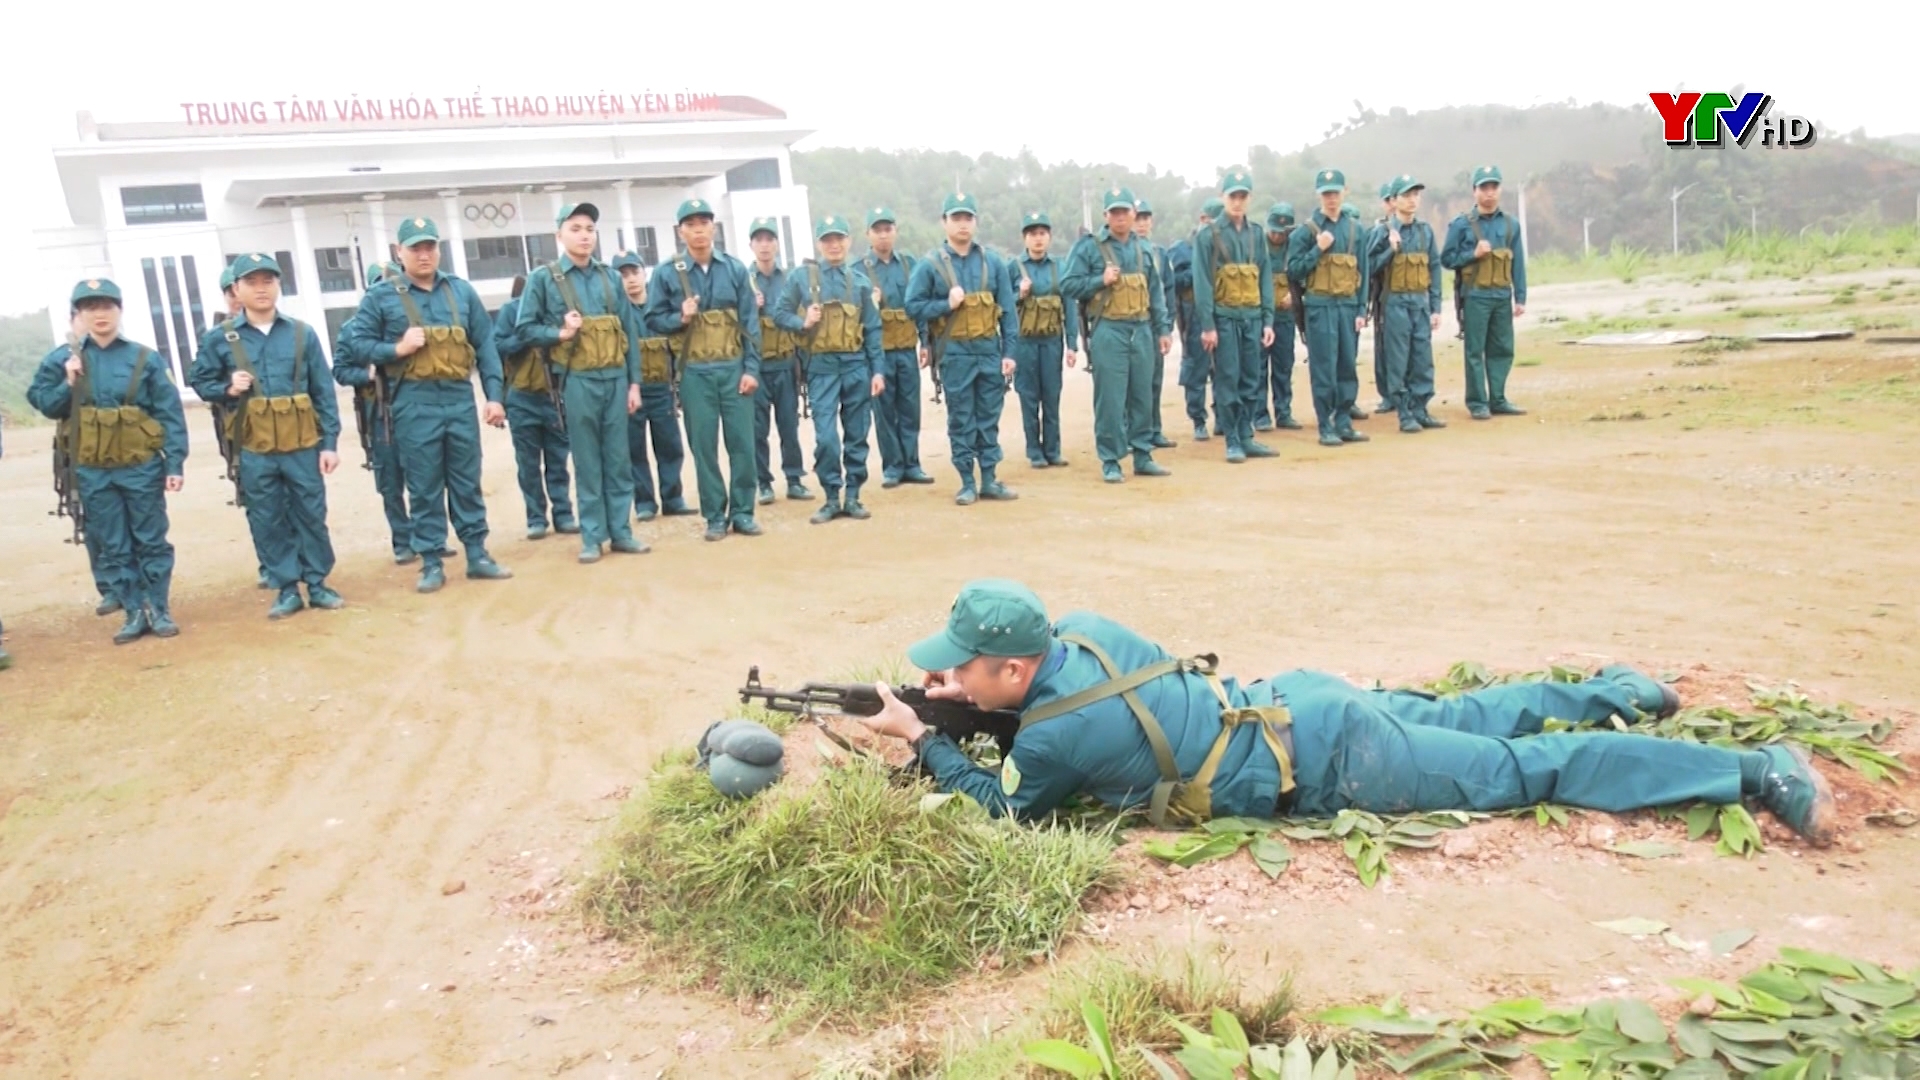 Yên Bình: Huấn luyện điểm dân quân tự vệ tại thị trấn Yên Bình